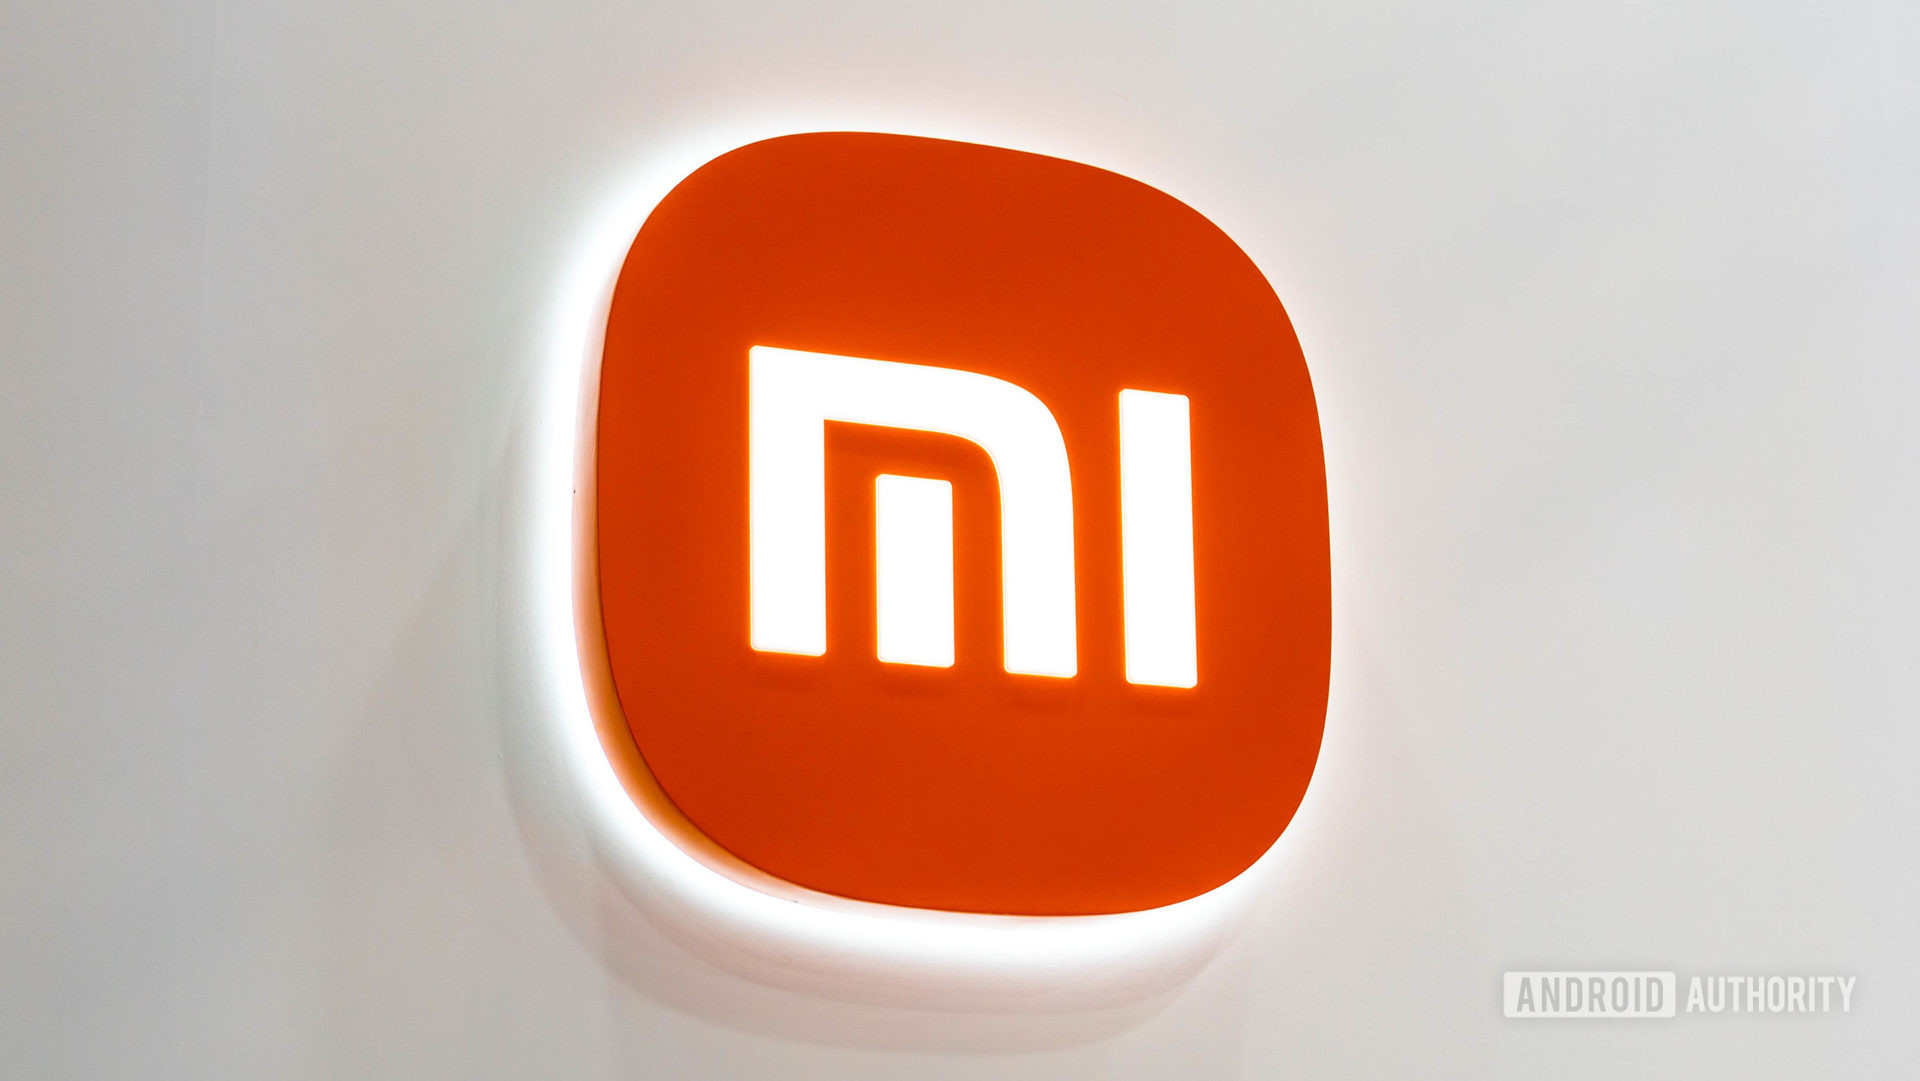 Xiaomi Mi logo on white wall